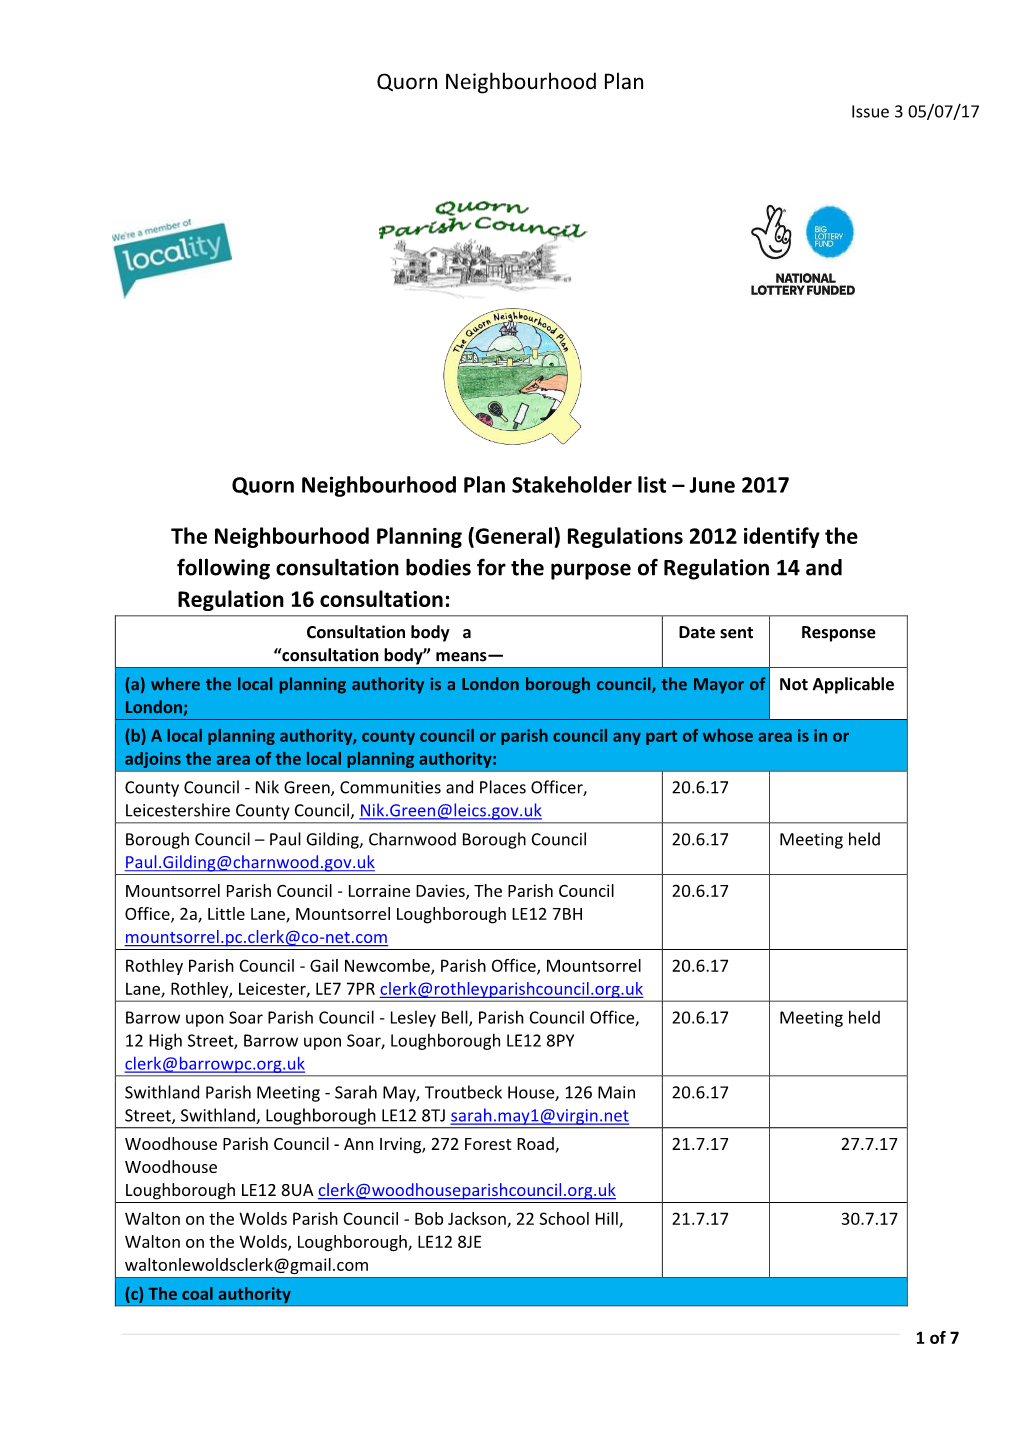 Quorn Neighbourhood Plan Stakeholder List – June 2017